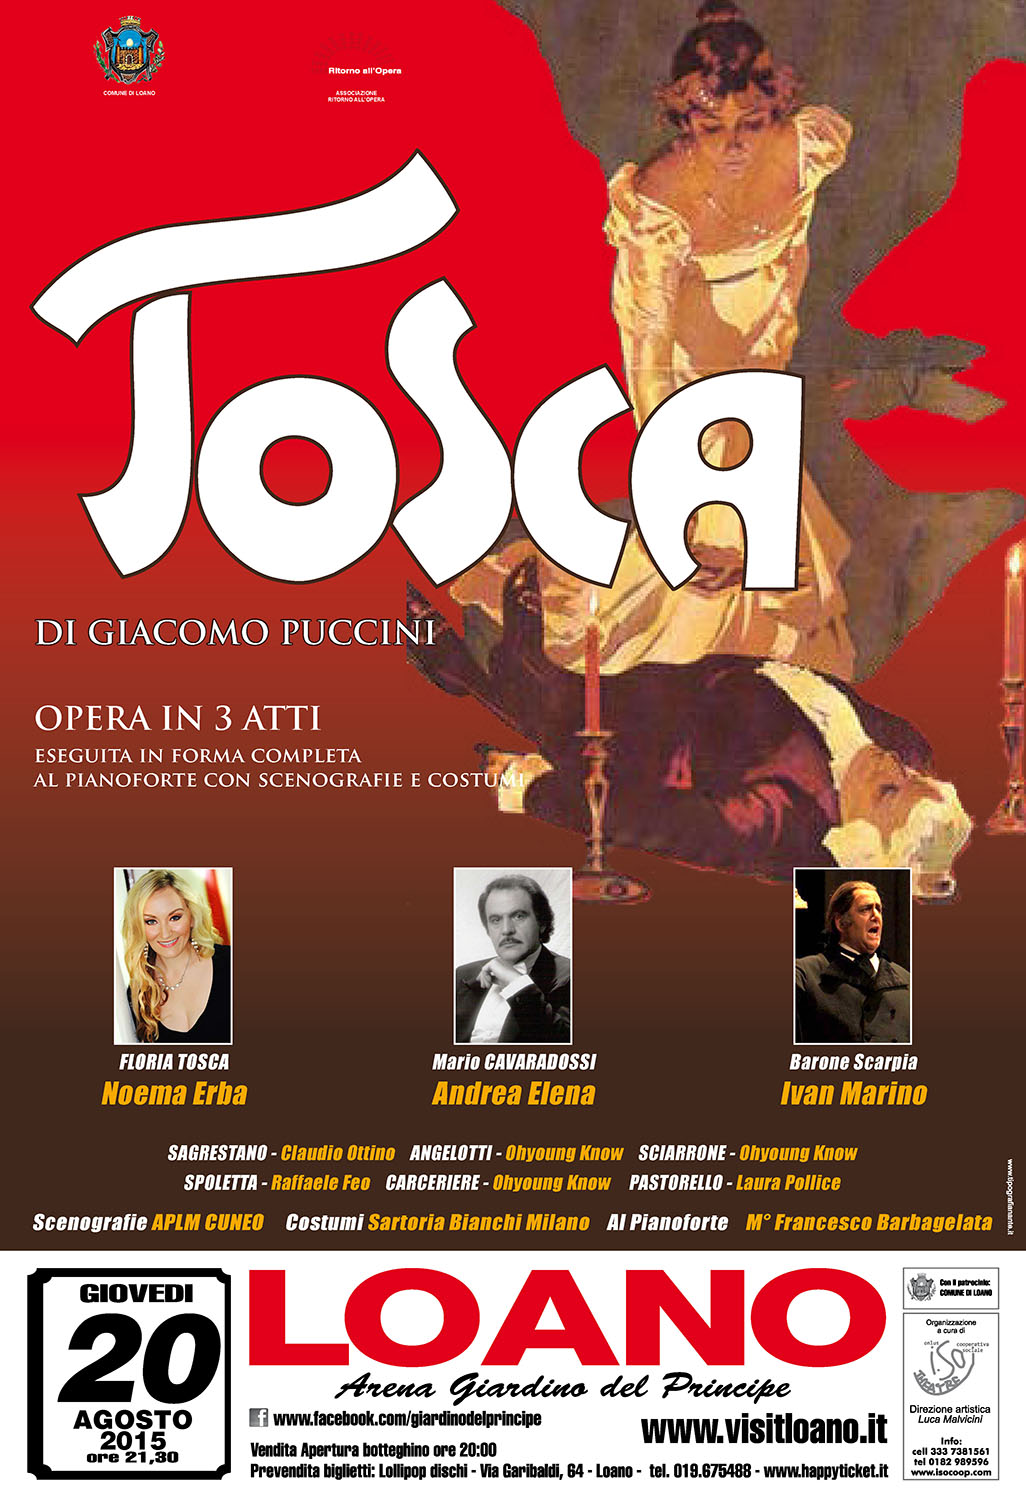 Noema Erba as Tosca, Teatro Loana, Italy